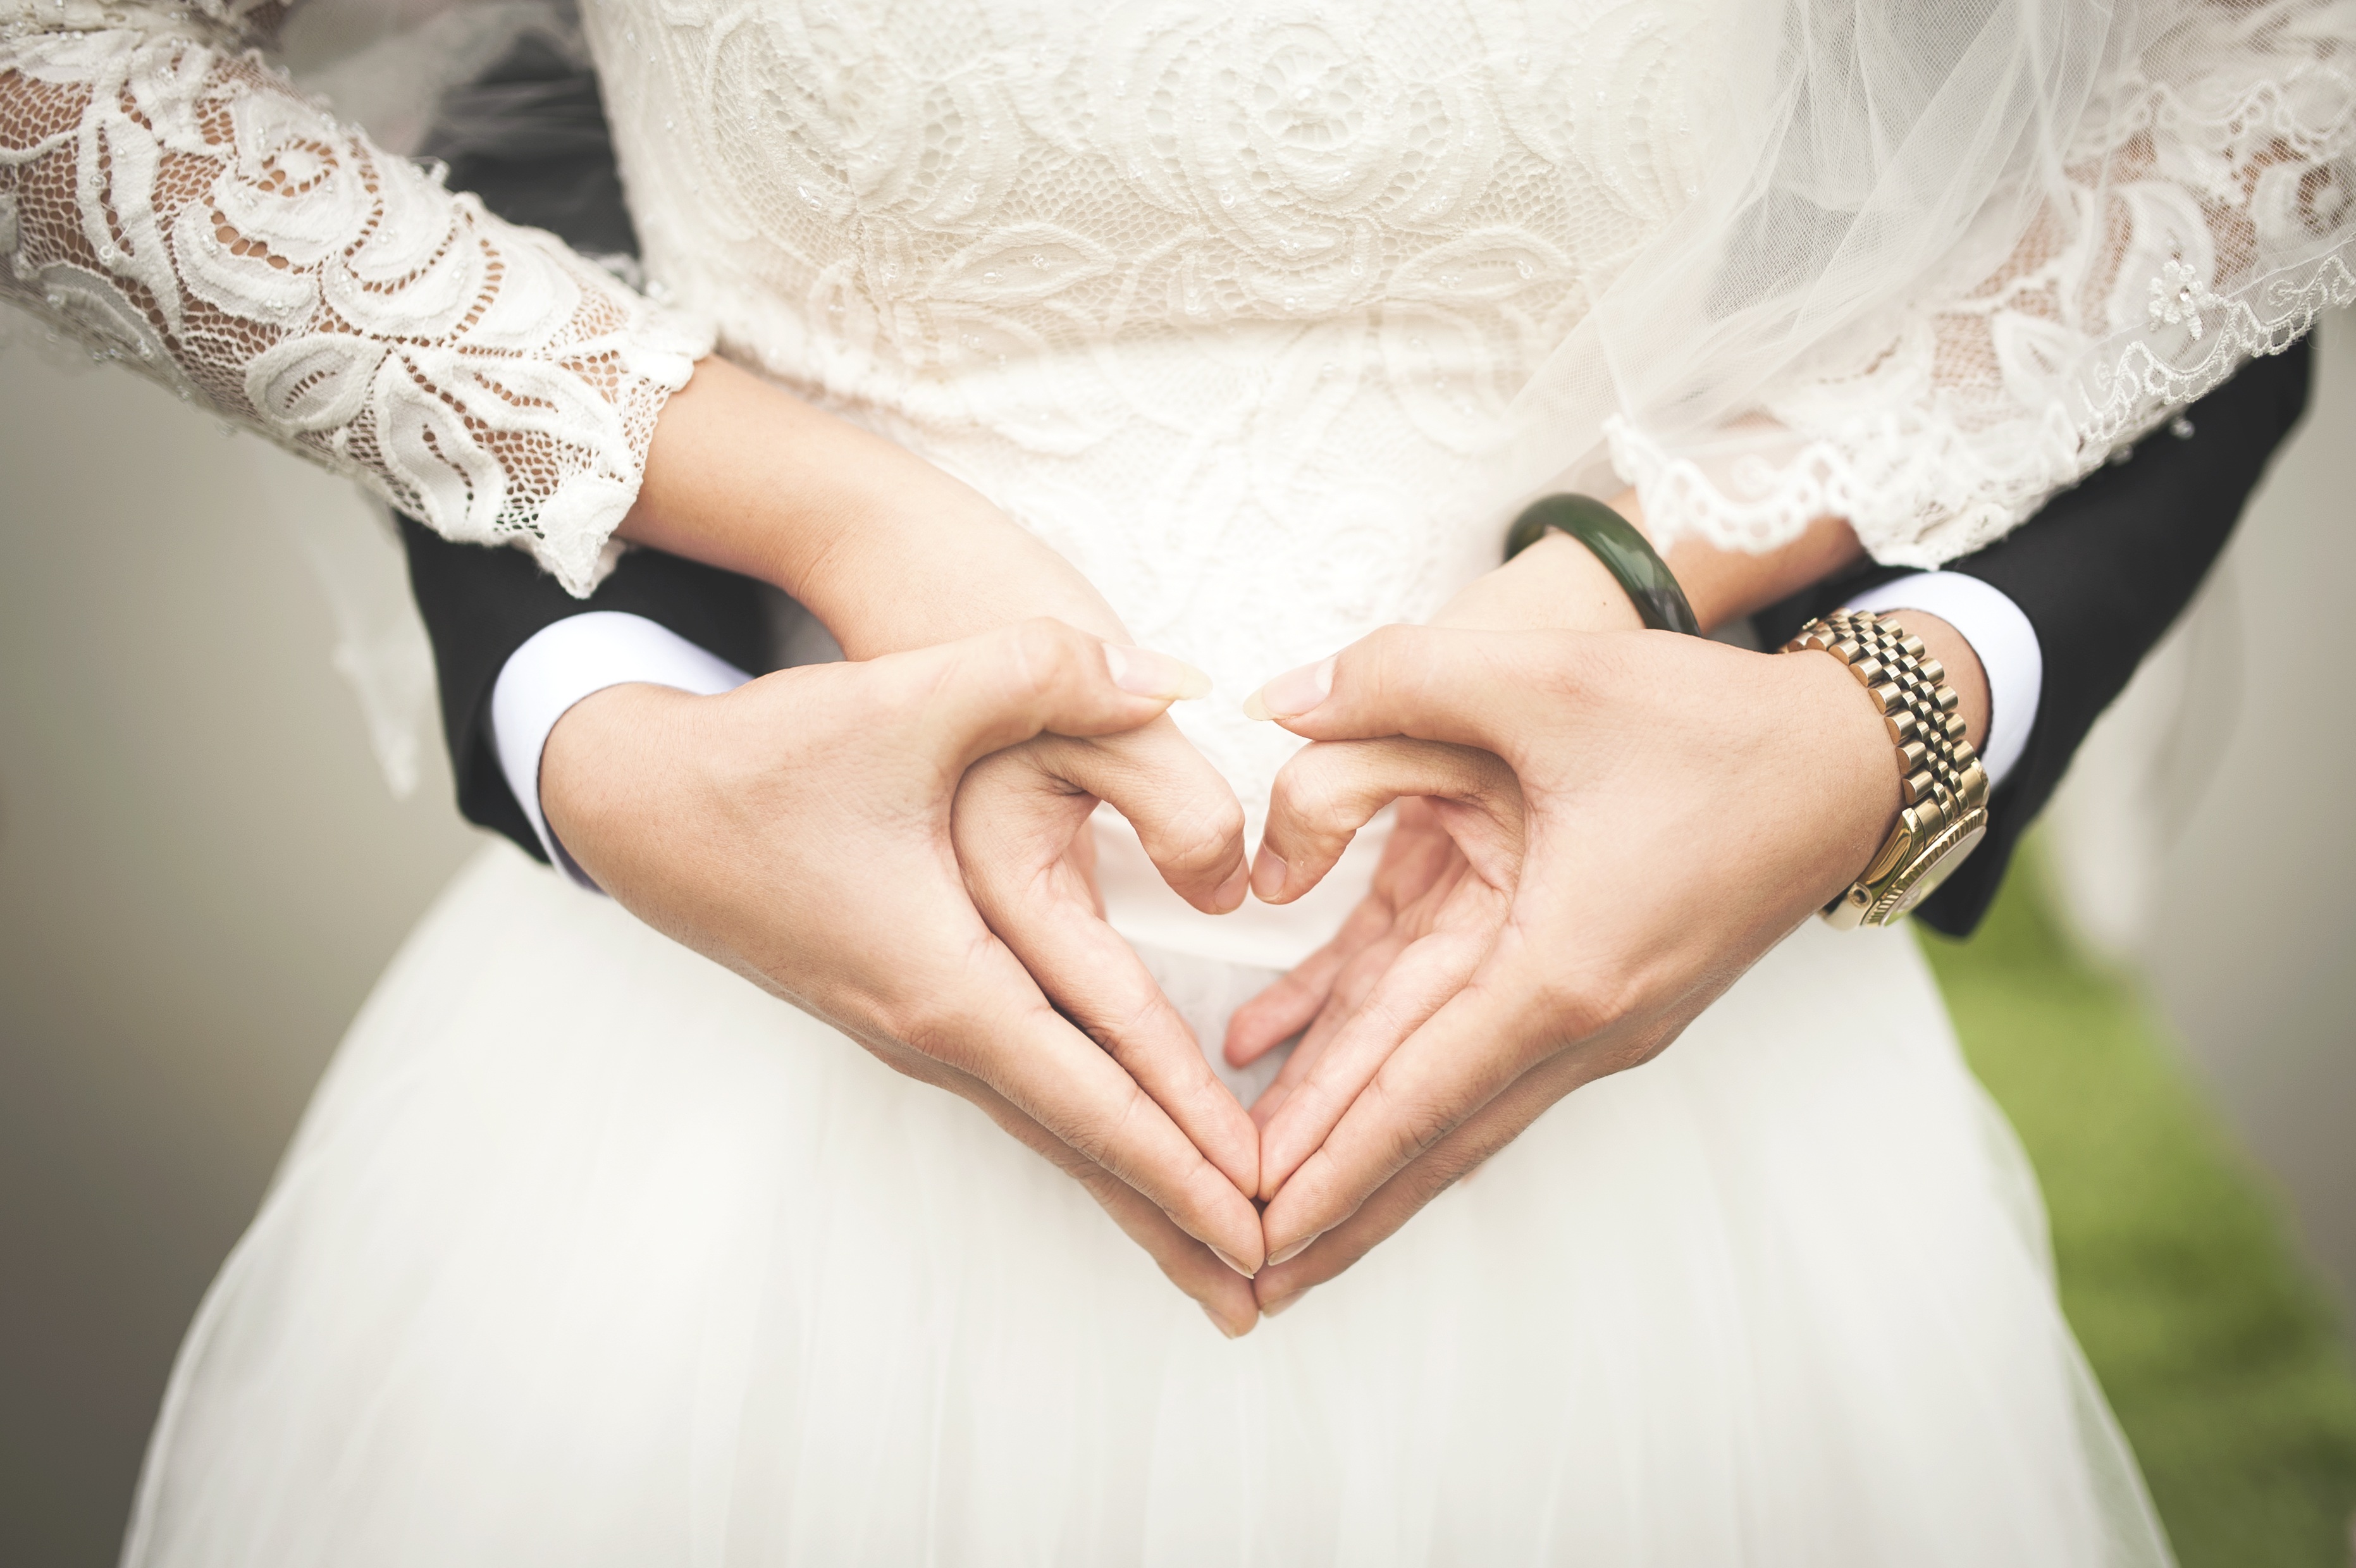 Фотографии свадебные Сердце Наручные часы рука 3725x2479 брак свадьбе свадьбы Свадьба серце сердца сердечко Руки